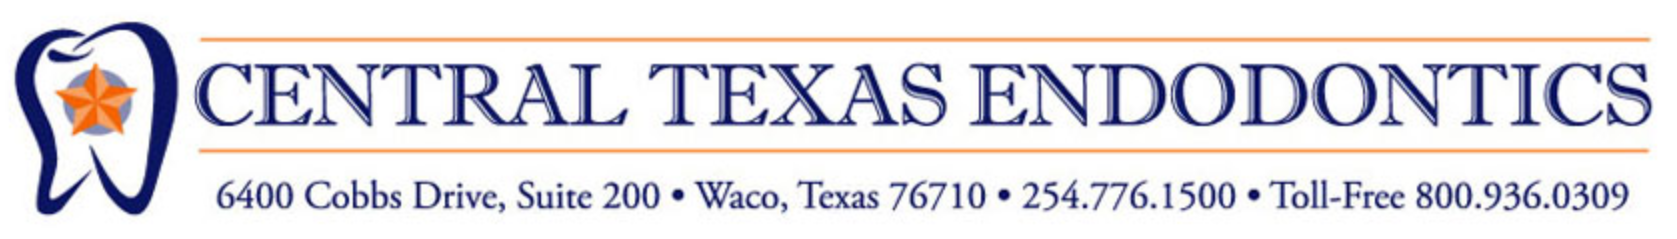 Central Texas Endodontics - Logo